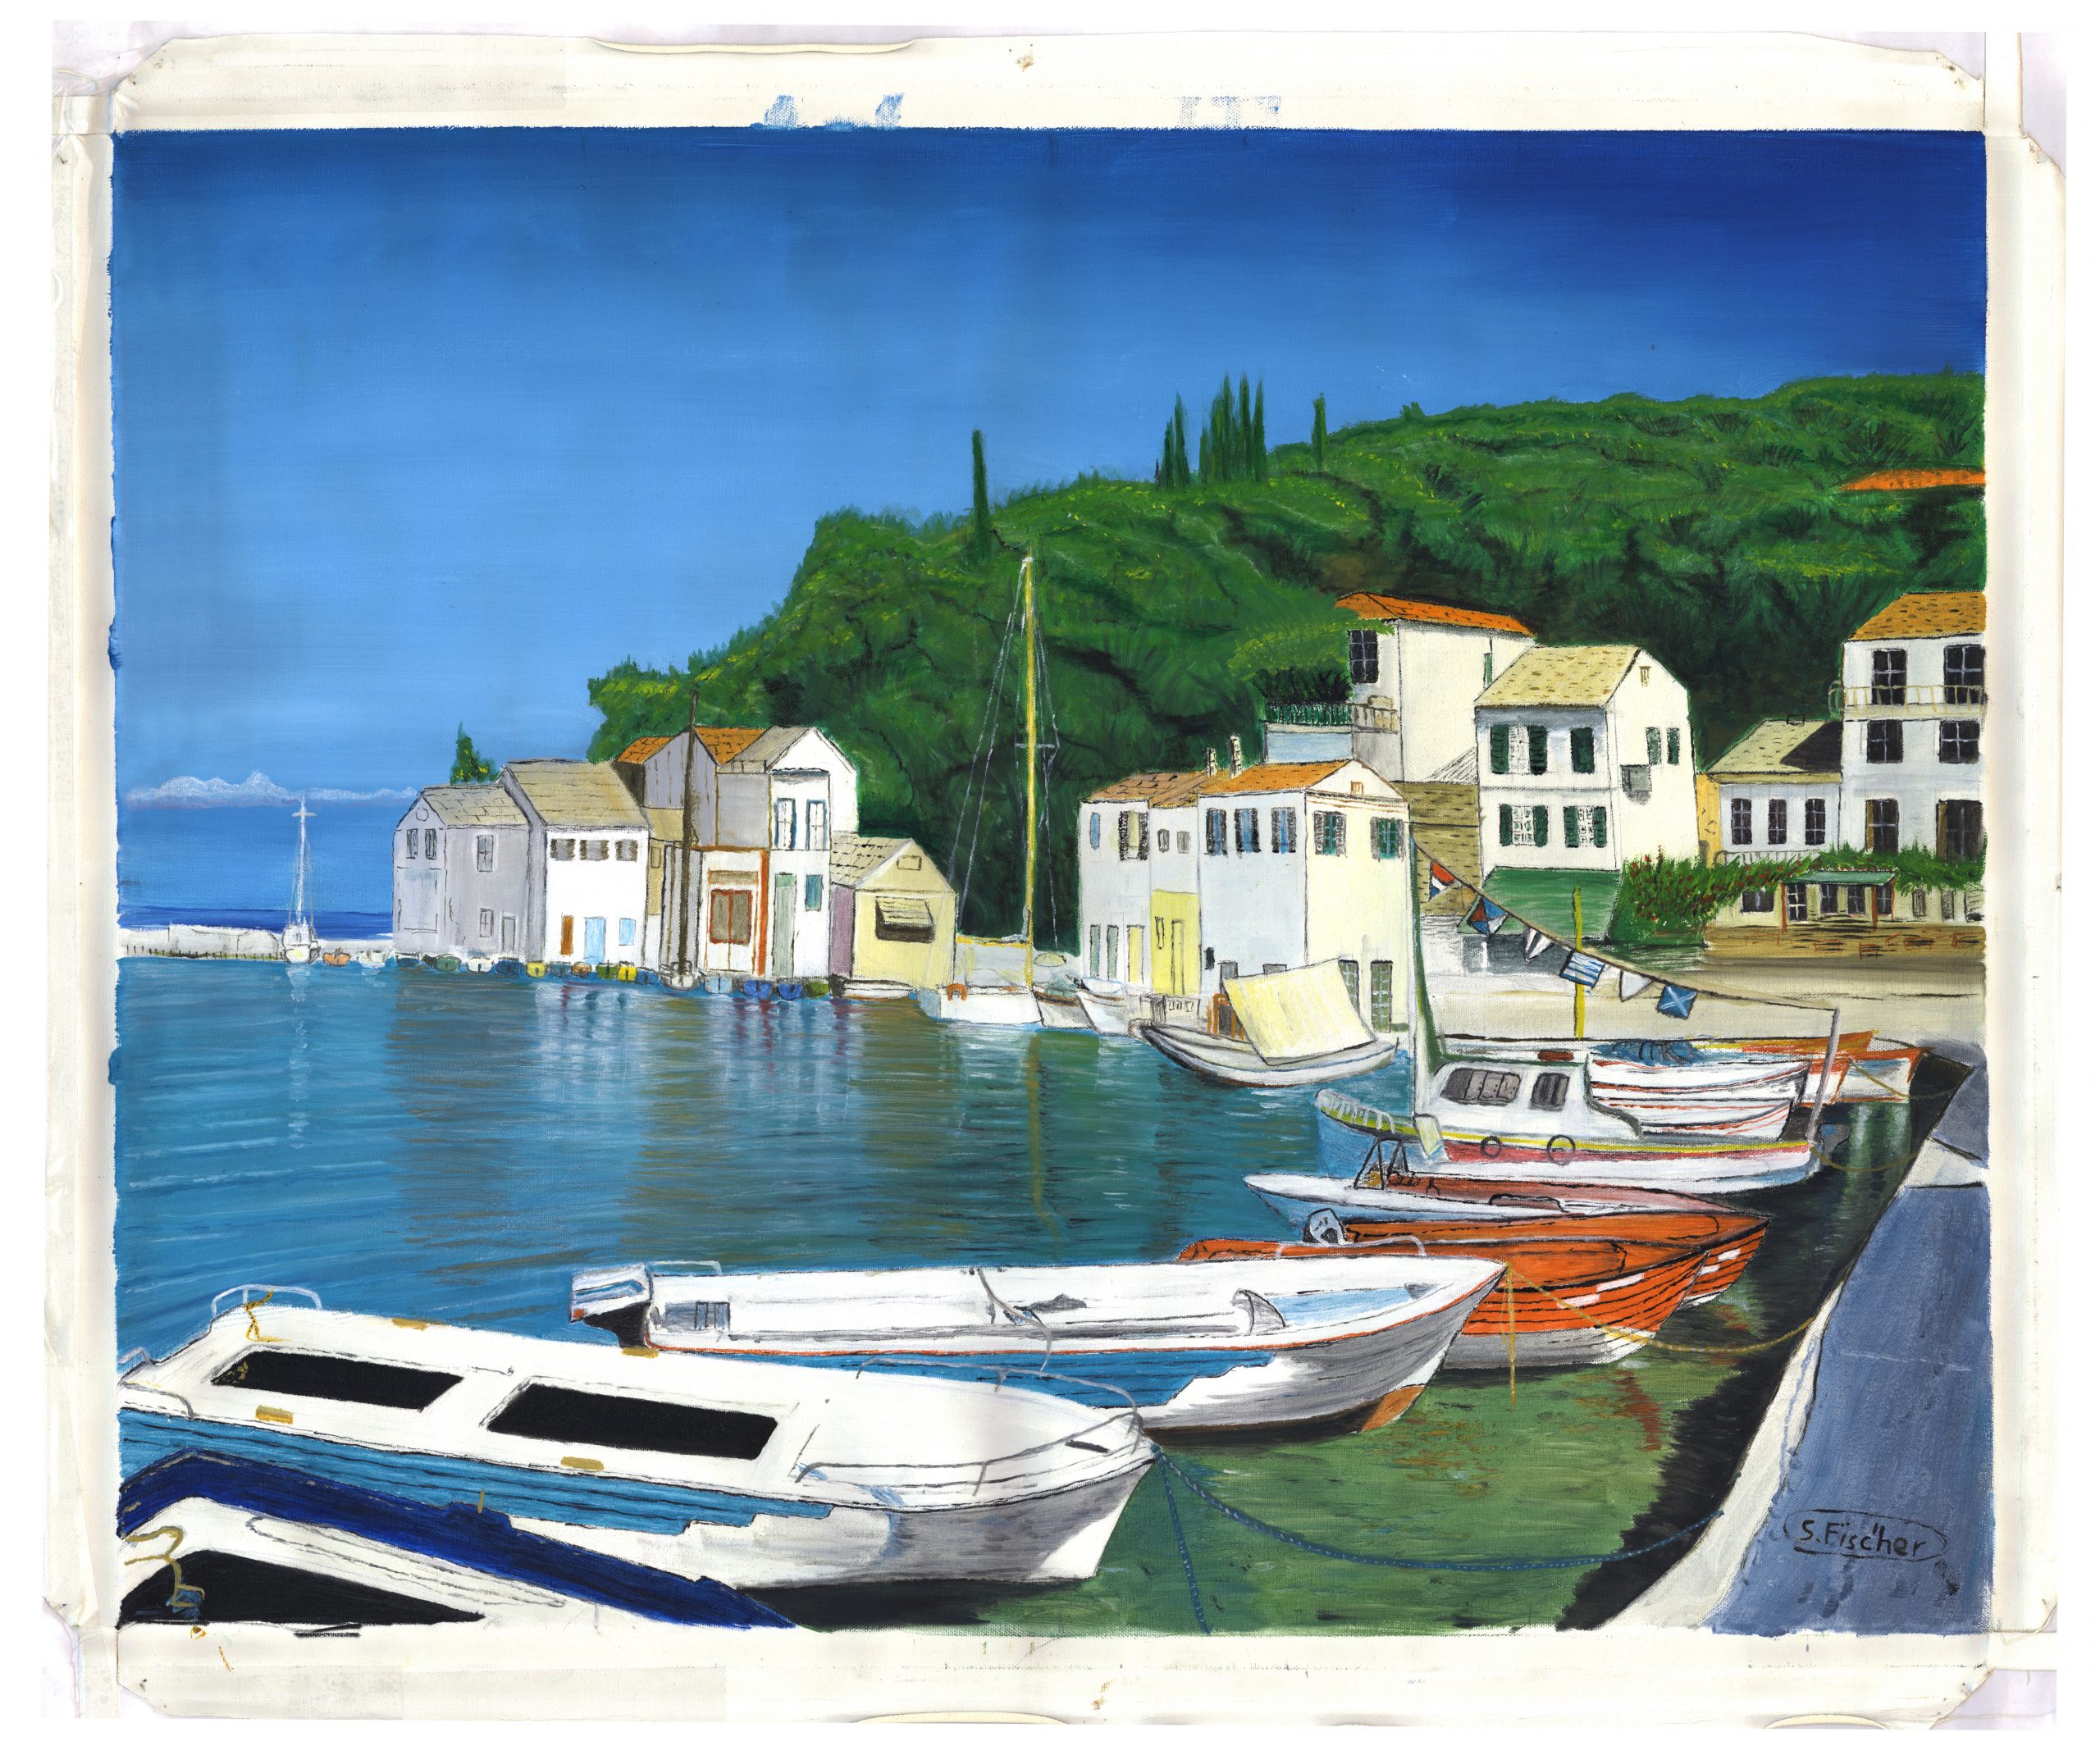 Greek Marina - Loggos